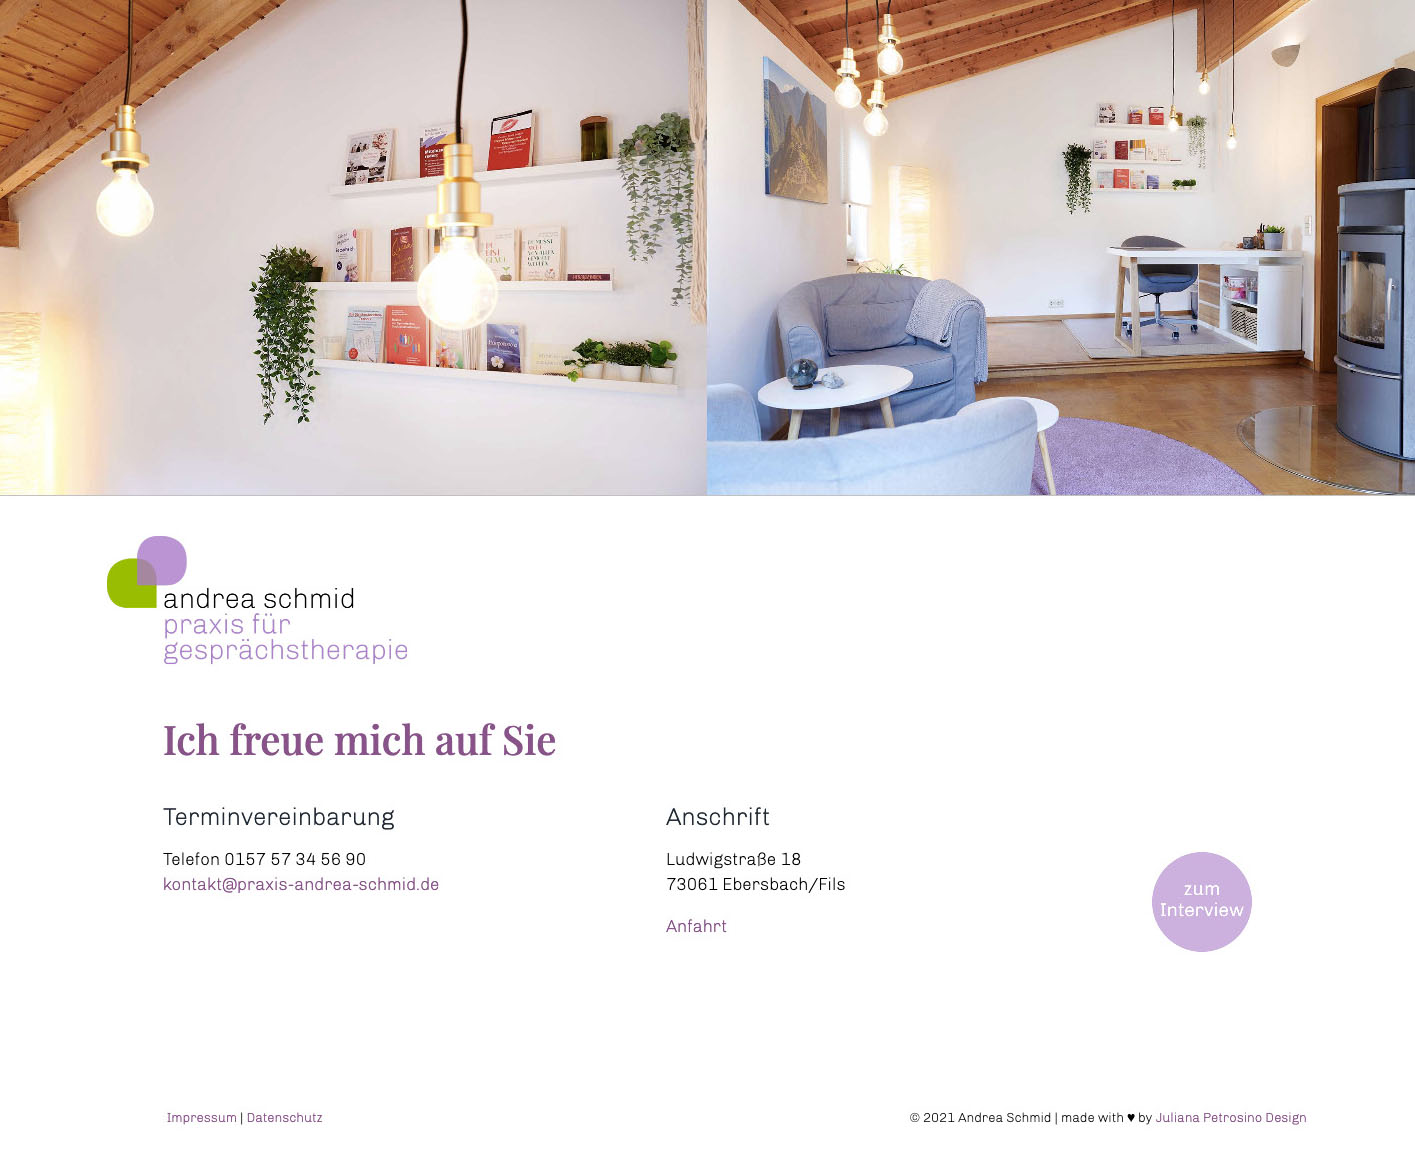 Andrea Schmid Gesprächstherapie Ebersbach an der Fils, Webdesign